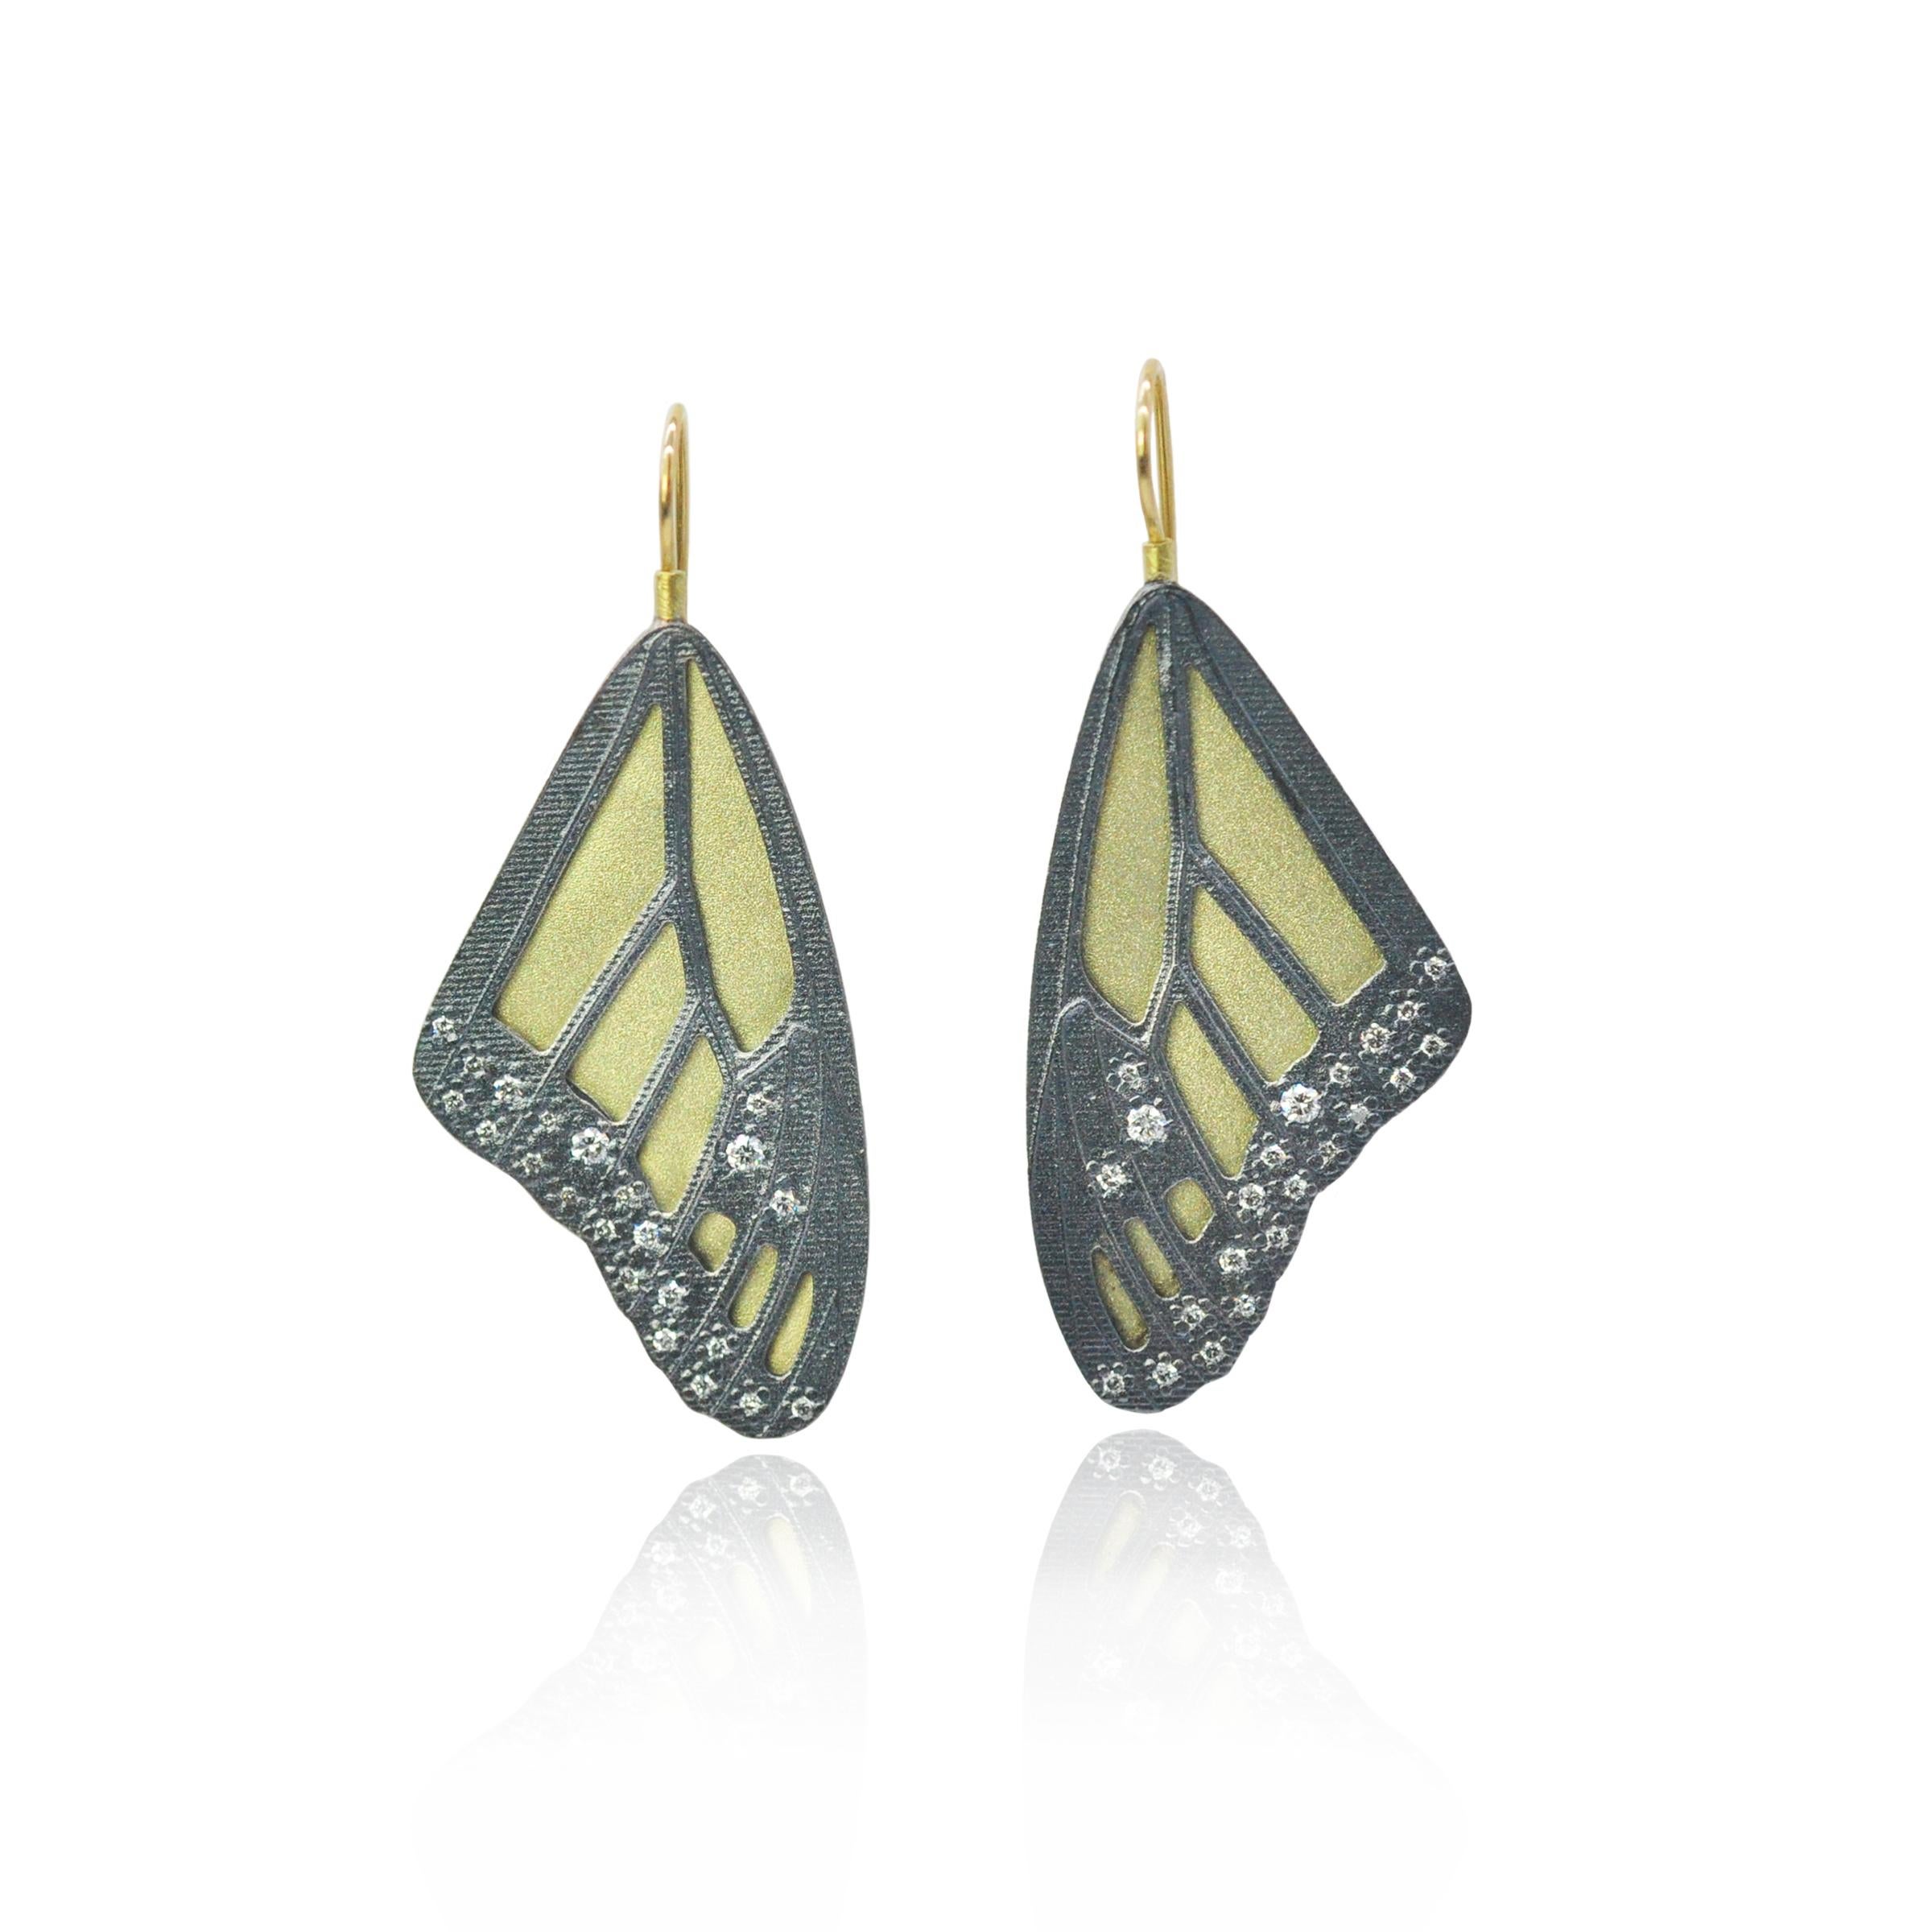 Véritable signature de Rebecca Myers Design, nos ailes de papillon monarque s'inspirent des chefs-d'œuvre de la nature et sont fabriquées à la main avec des matériaux de la plus haute qualité. L'argent sterling oxydé est superposé à l'or jaune 18